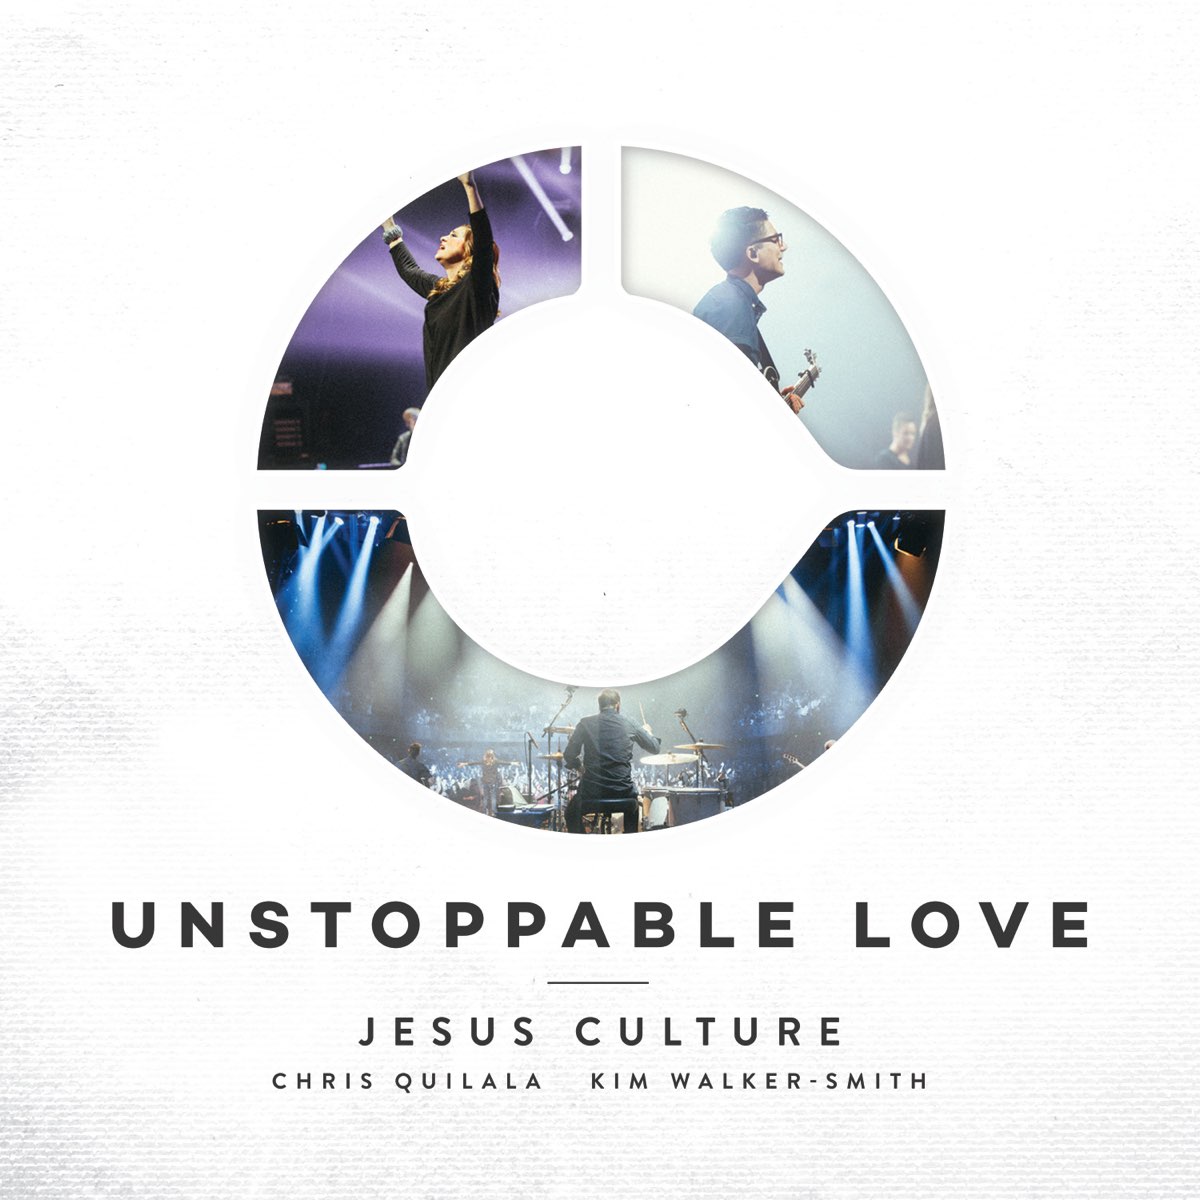 Your Love Never Fails (Live) - Album by Jesus Culture - Apple Music